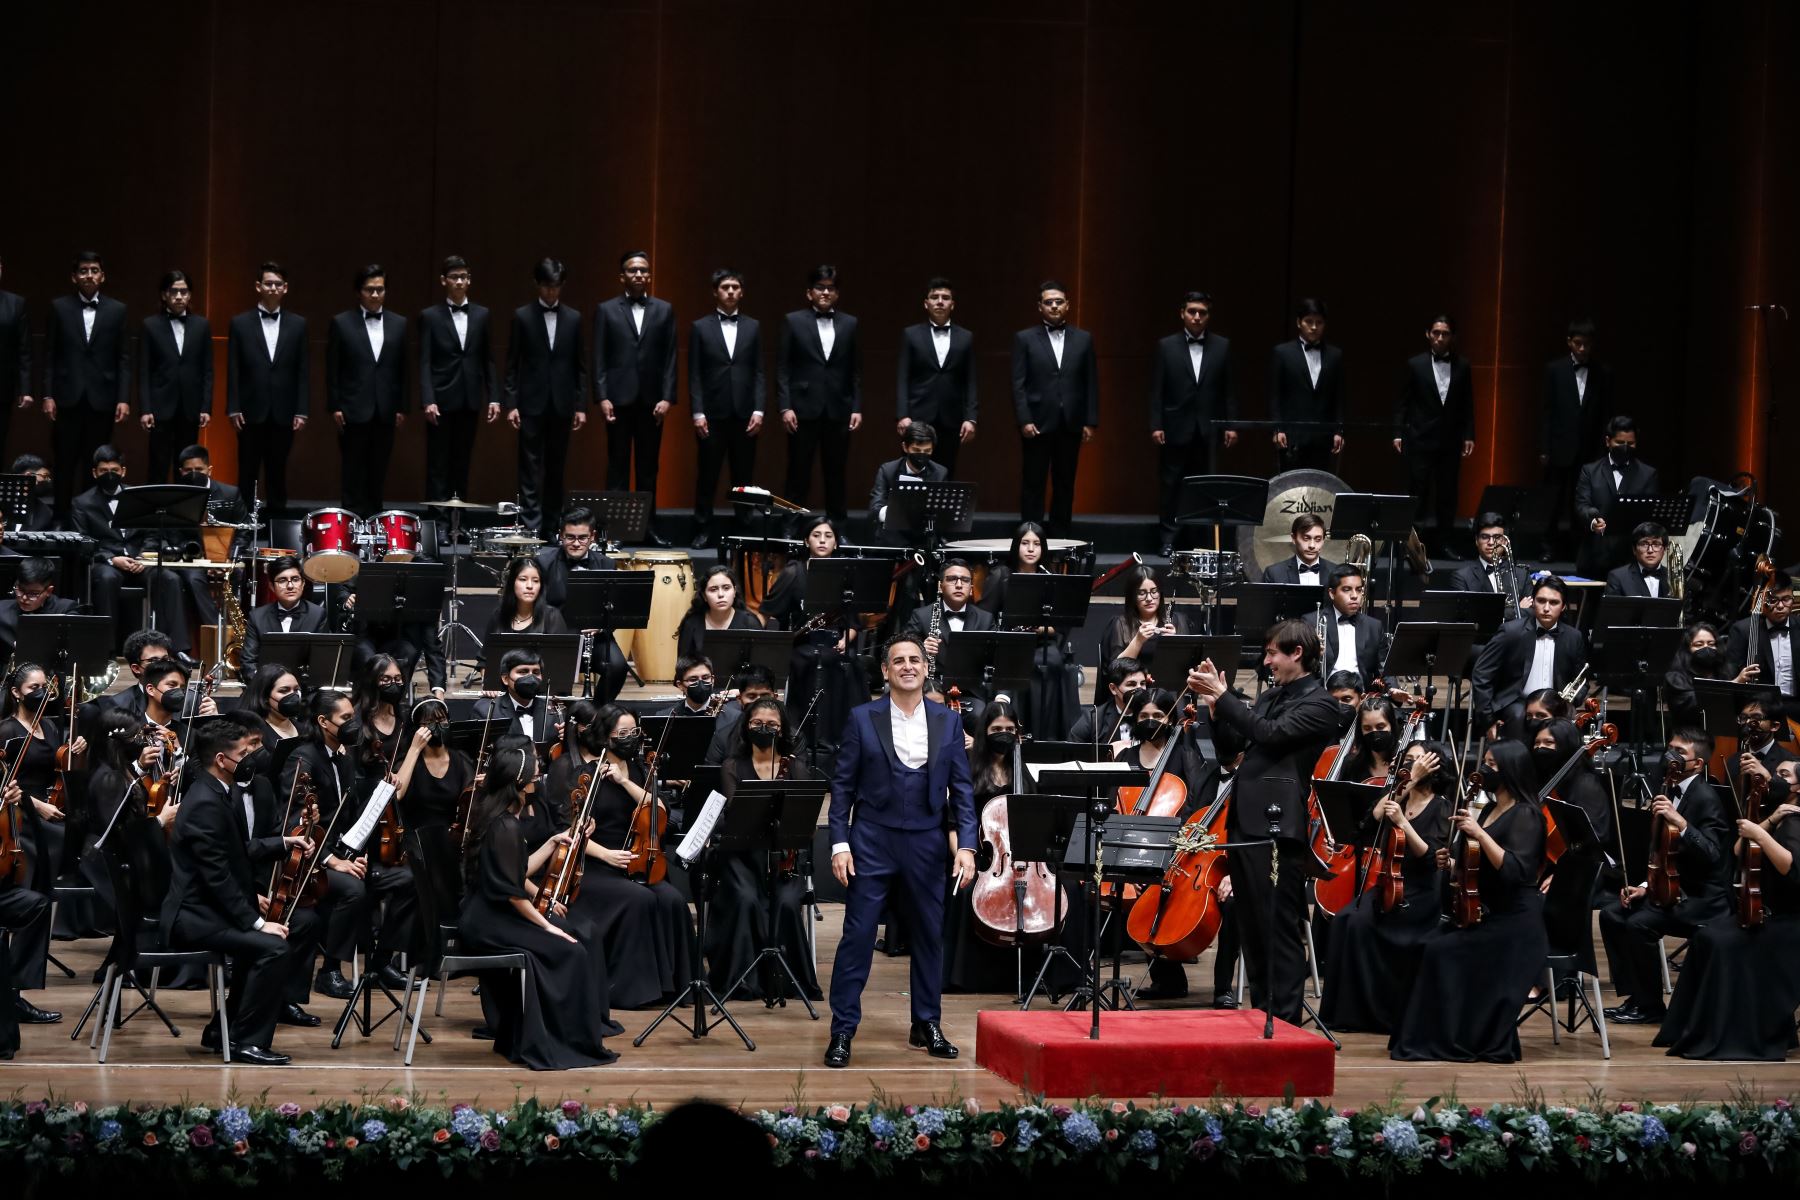 La orquesta juvenil de sinfonía por el Perú representará al país en gira por europa